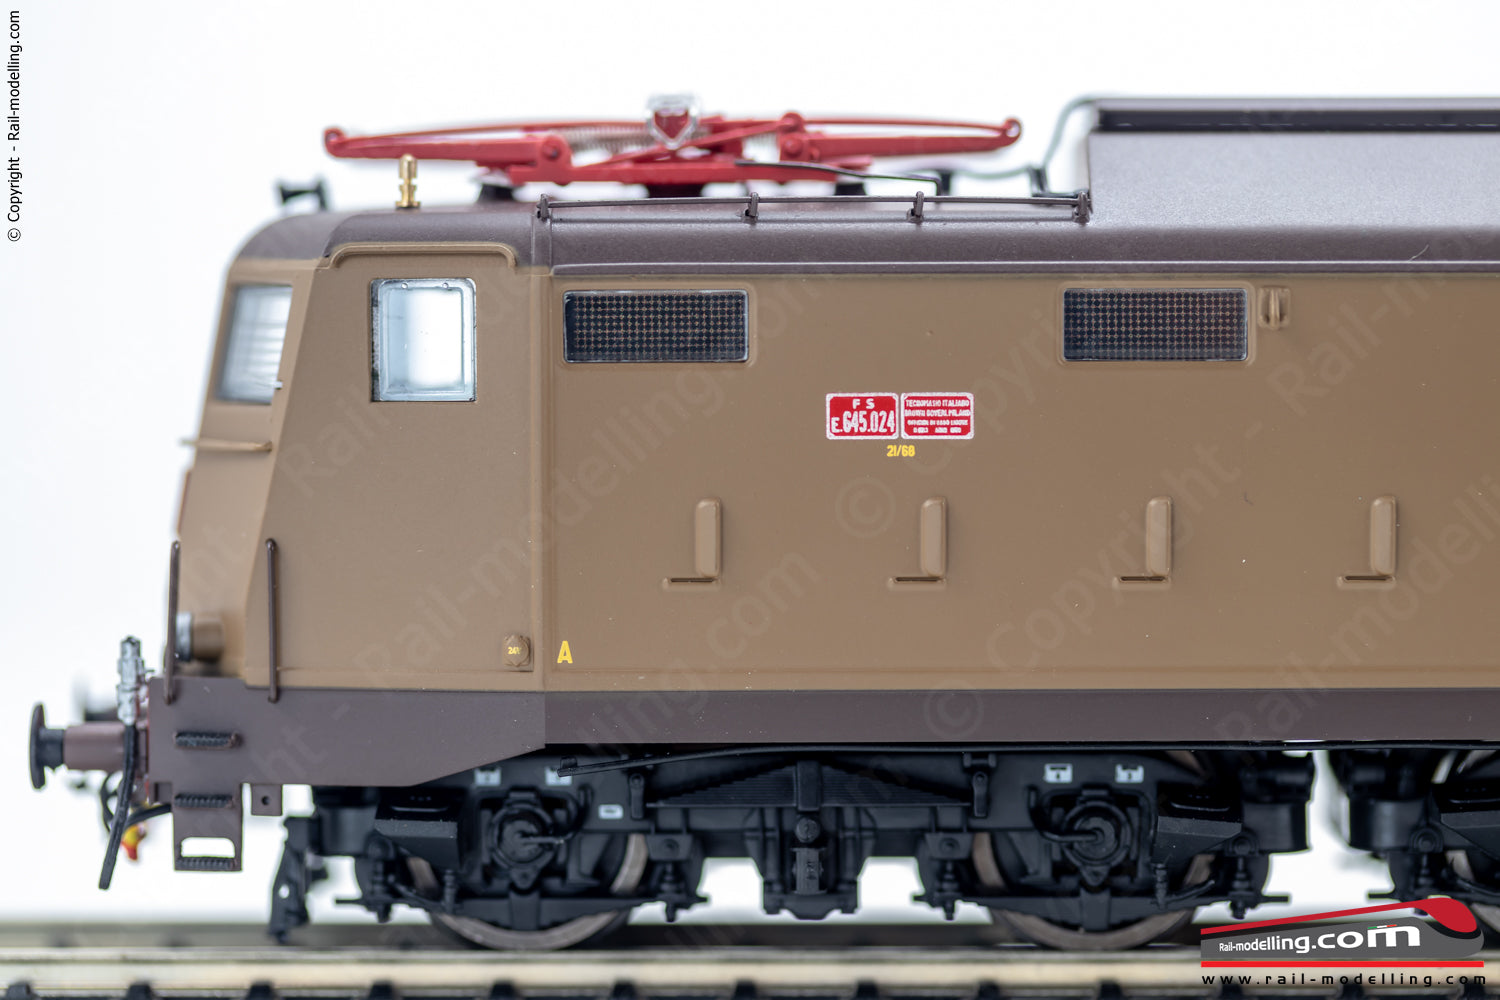 ACME 60485 - H0 1:87 - Locomotiva elettrica FS E.645 024 livrea castano/isabella Ep. IVb